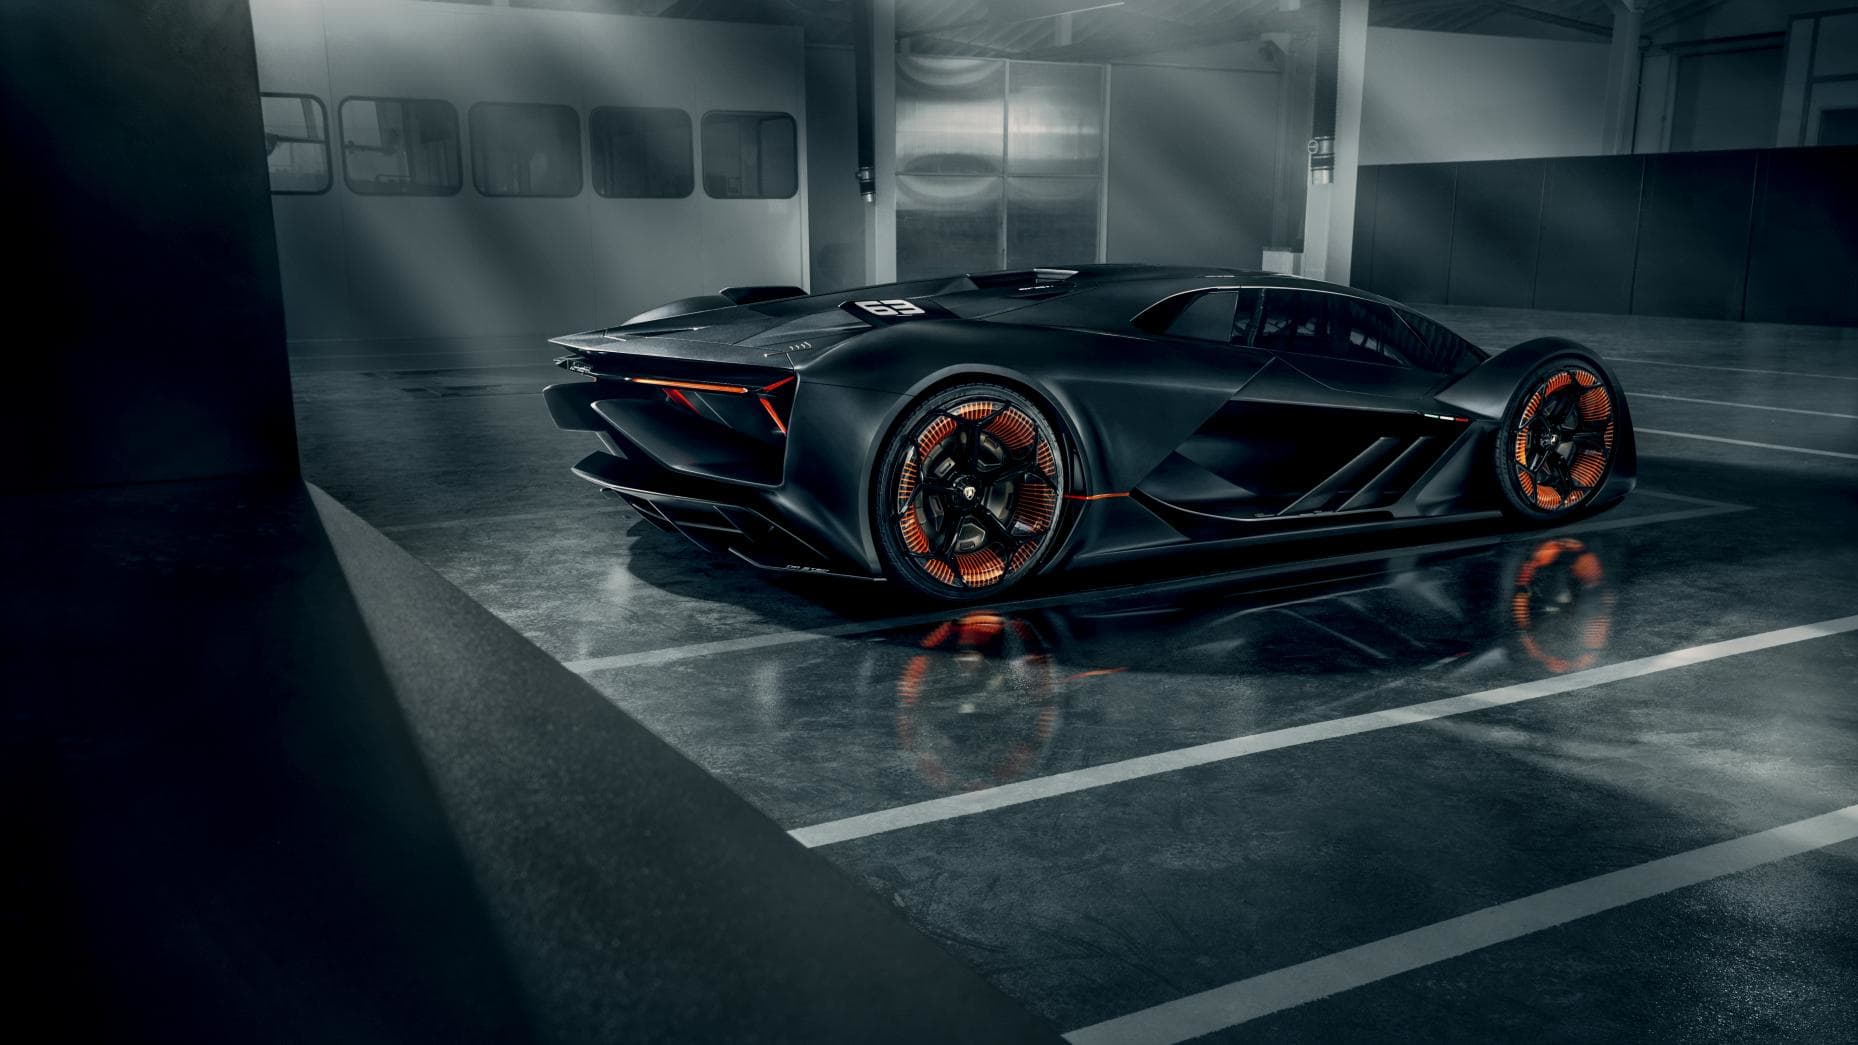 Lamborghini Terzo Millennio, elektrikli araba, geleceğin teknolojileri https://huglero.com/